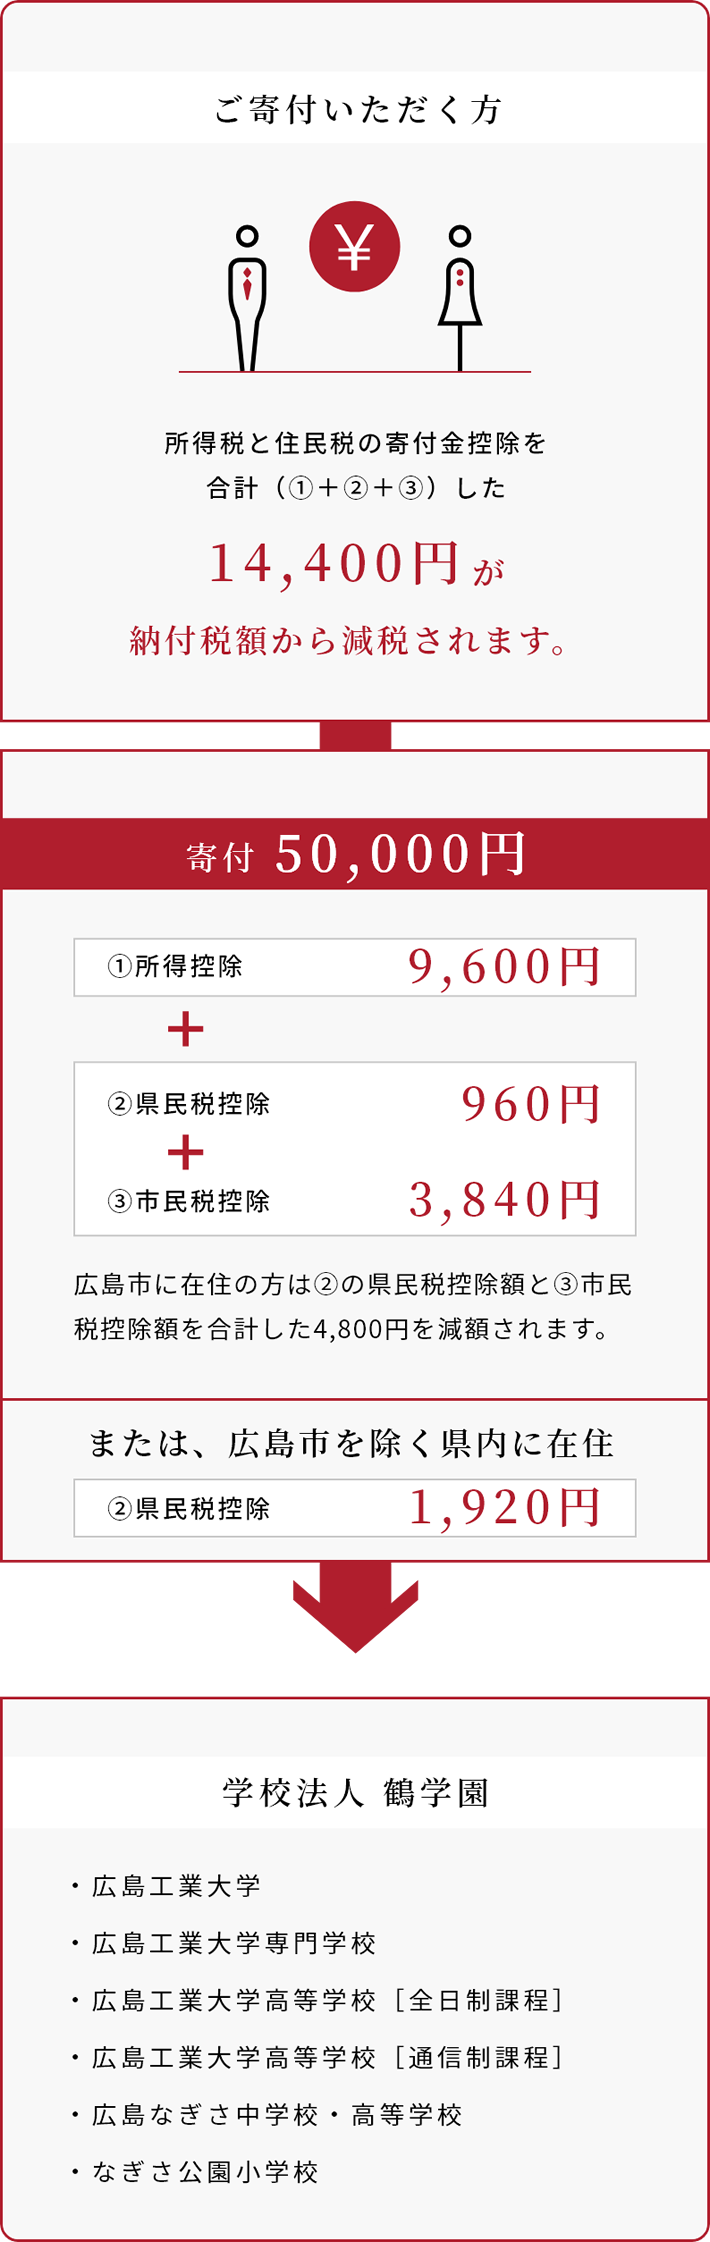 広島市在住で課税所得が500万円の方が5万円を寄付された場合